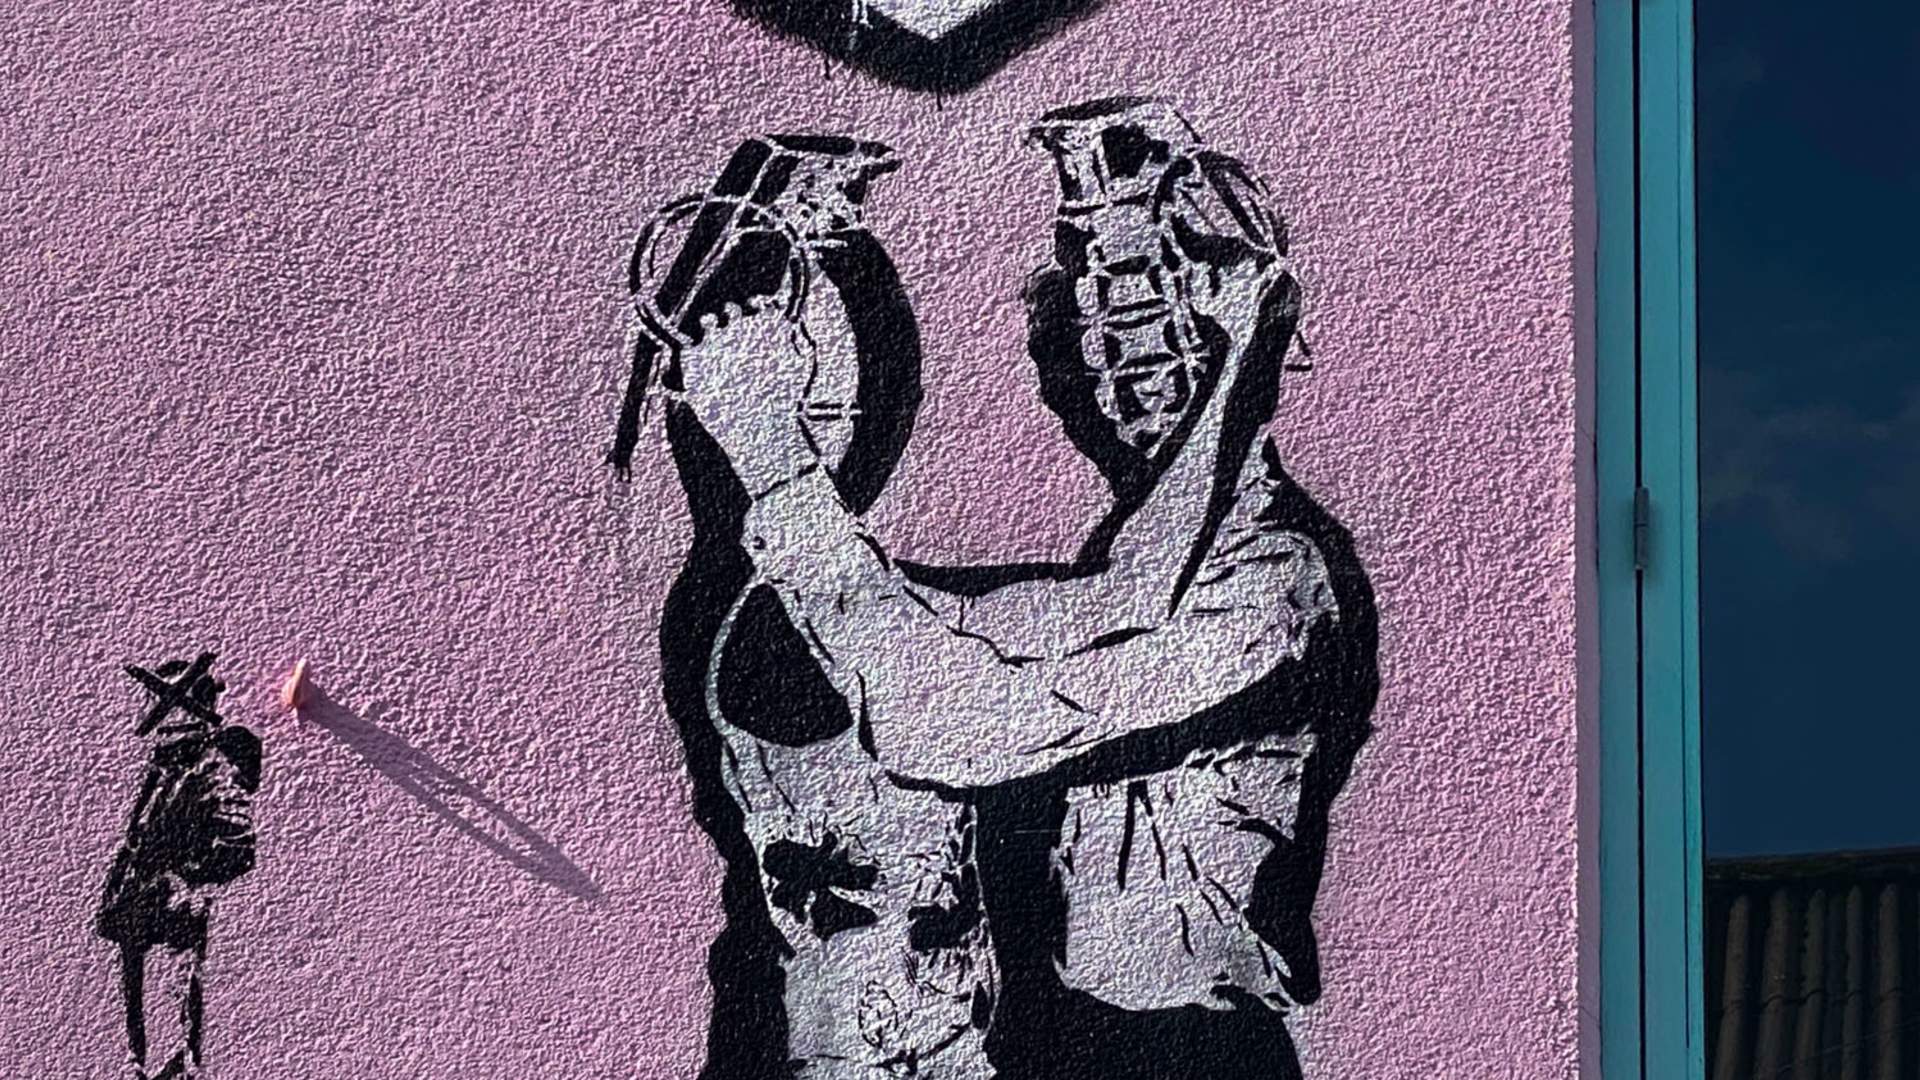 Stavanger Street art: "Grenade Lovers" von Dolk